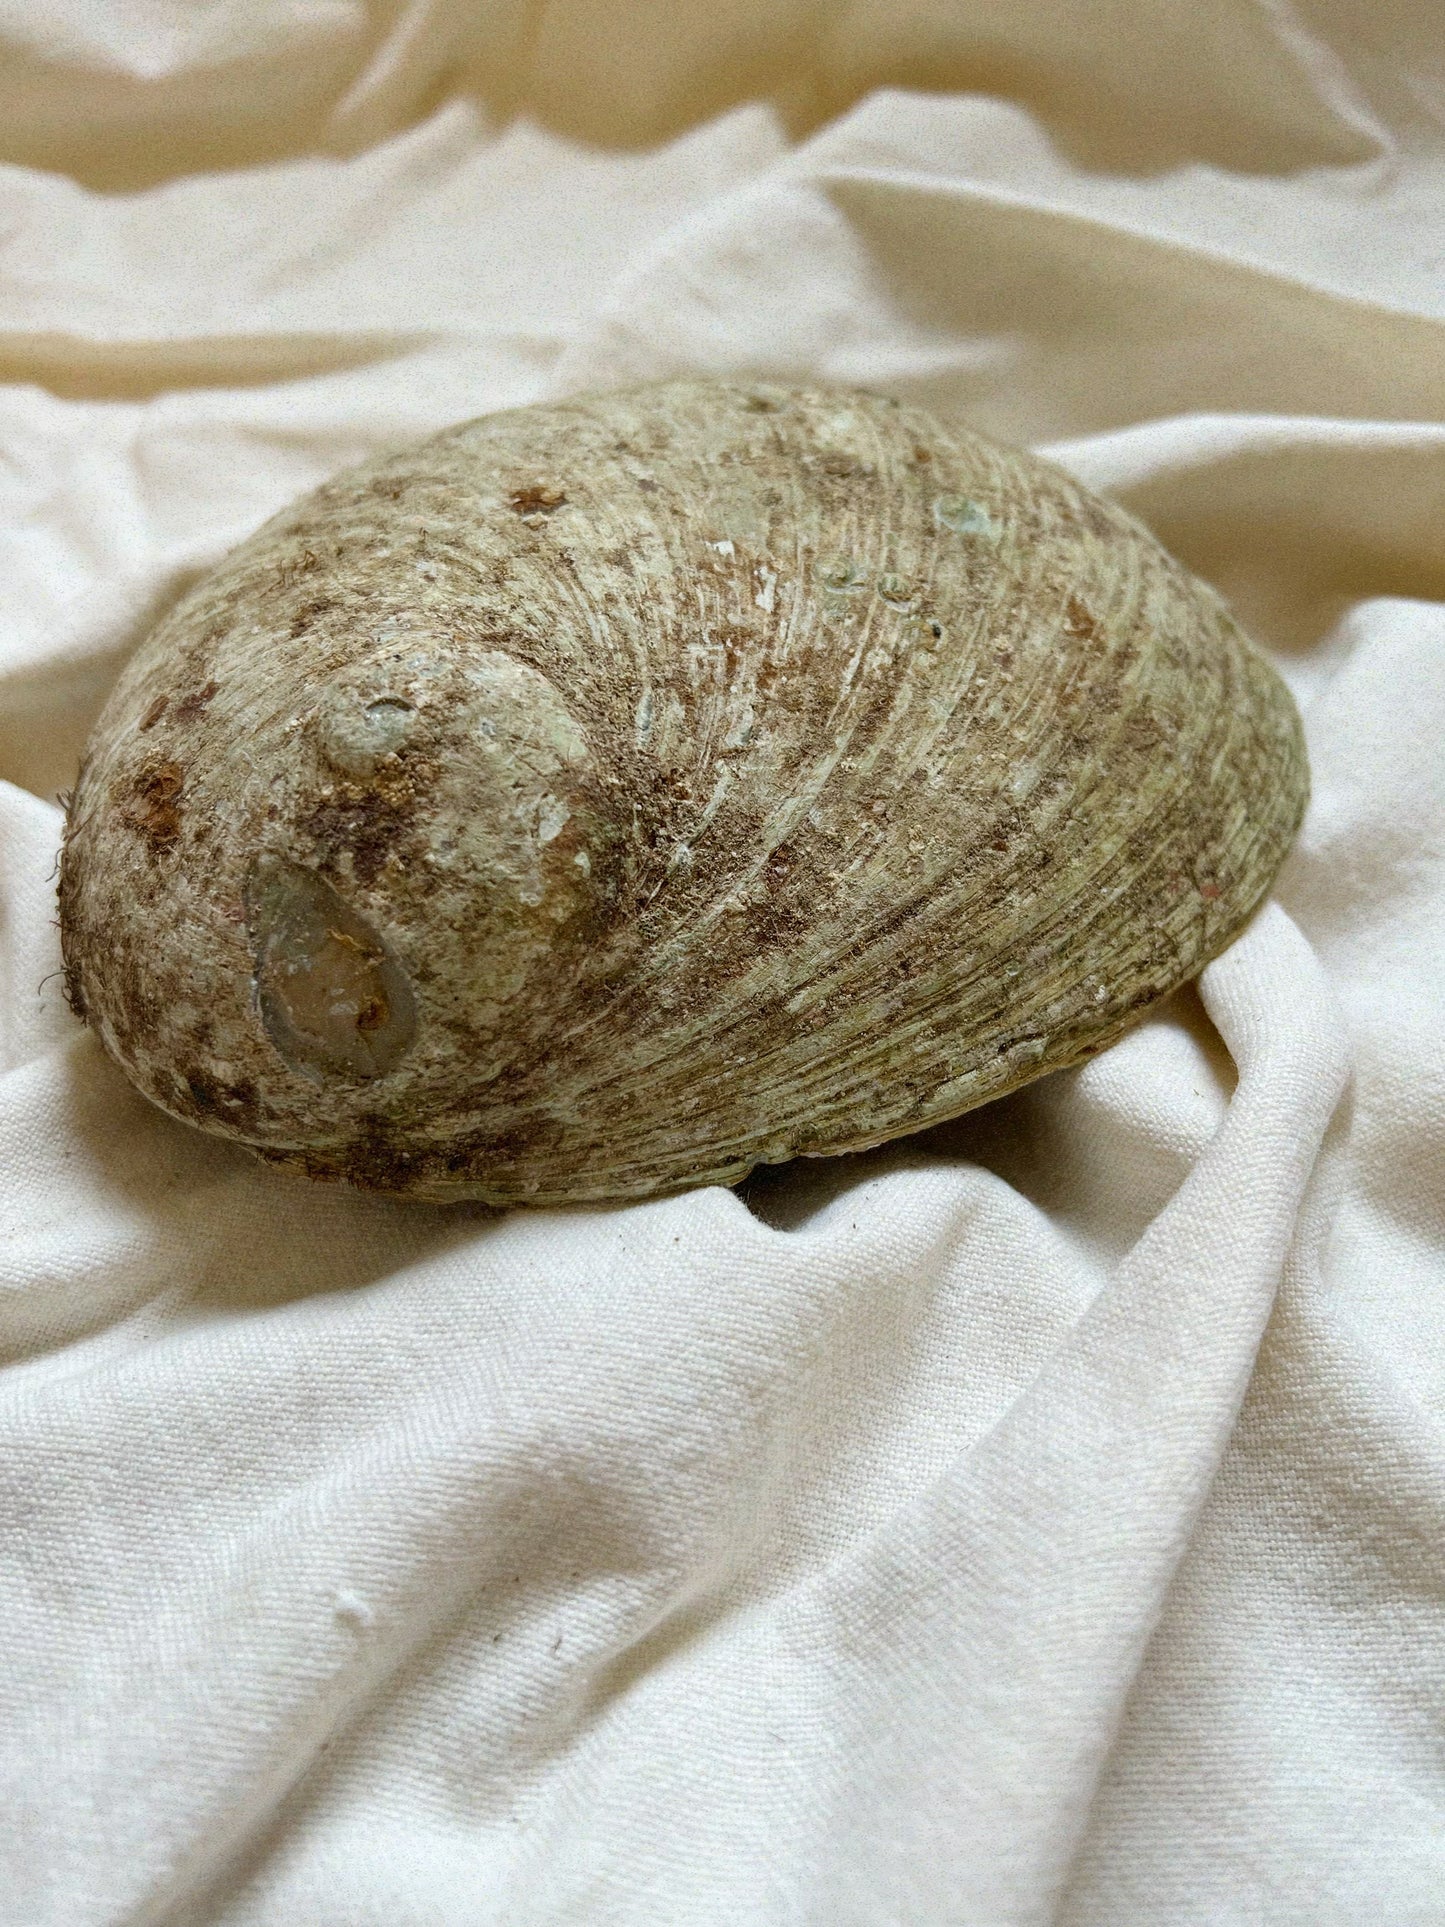 Abalone Muschel zum Räuchern